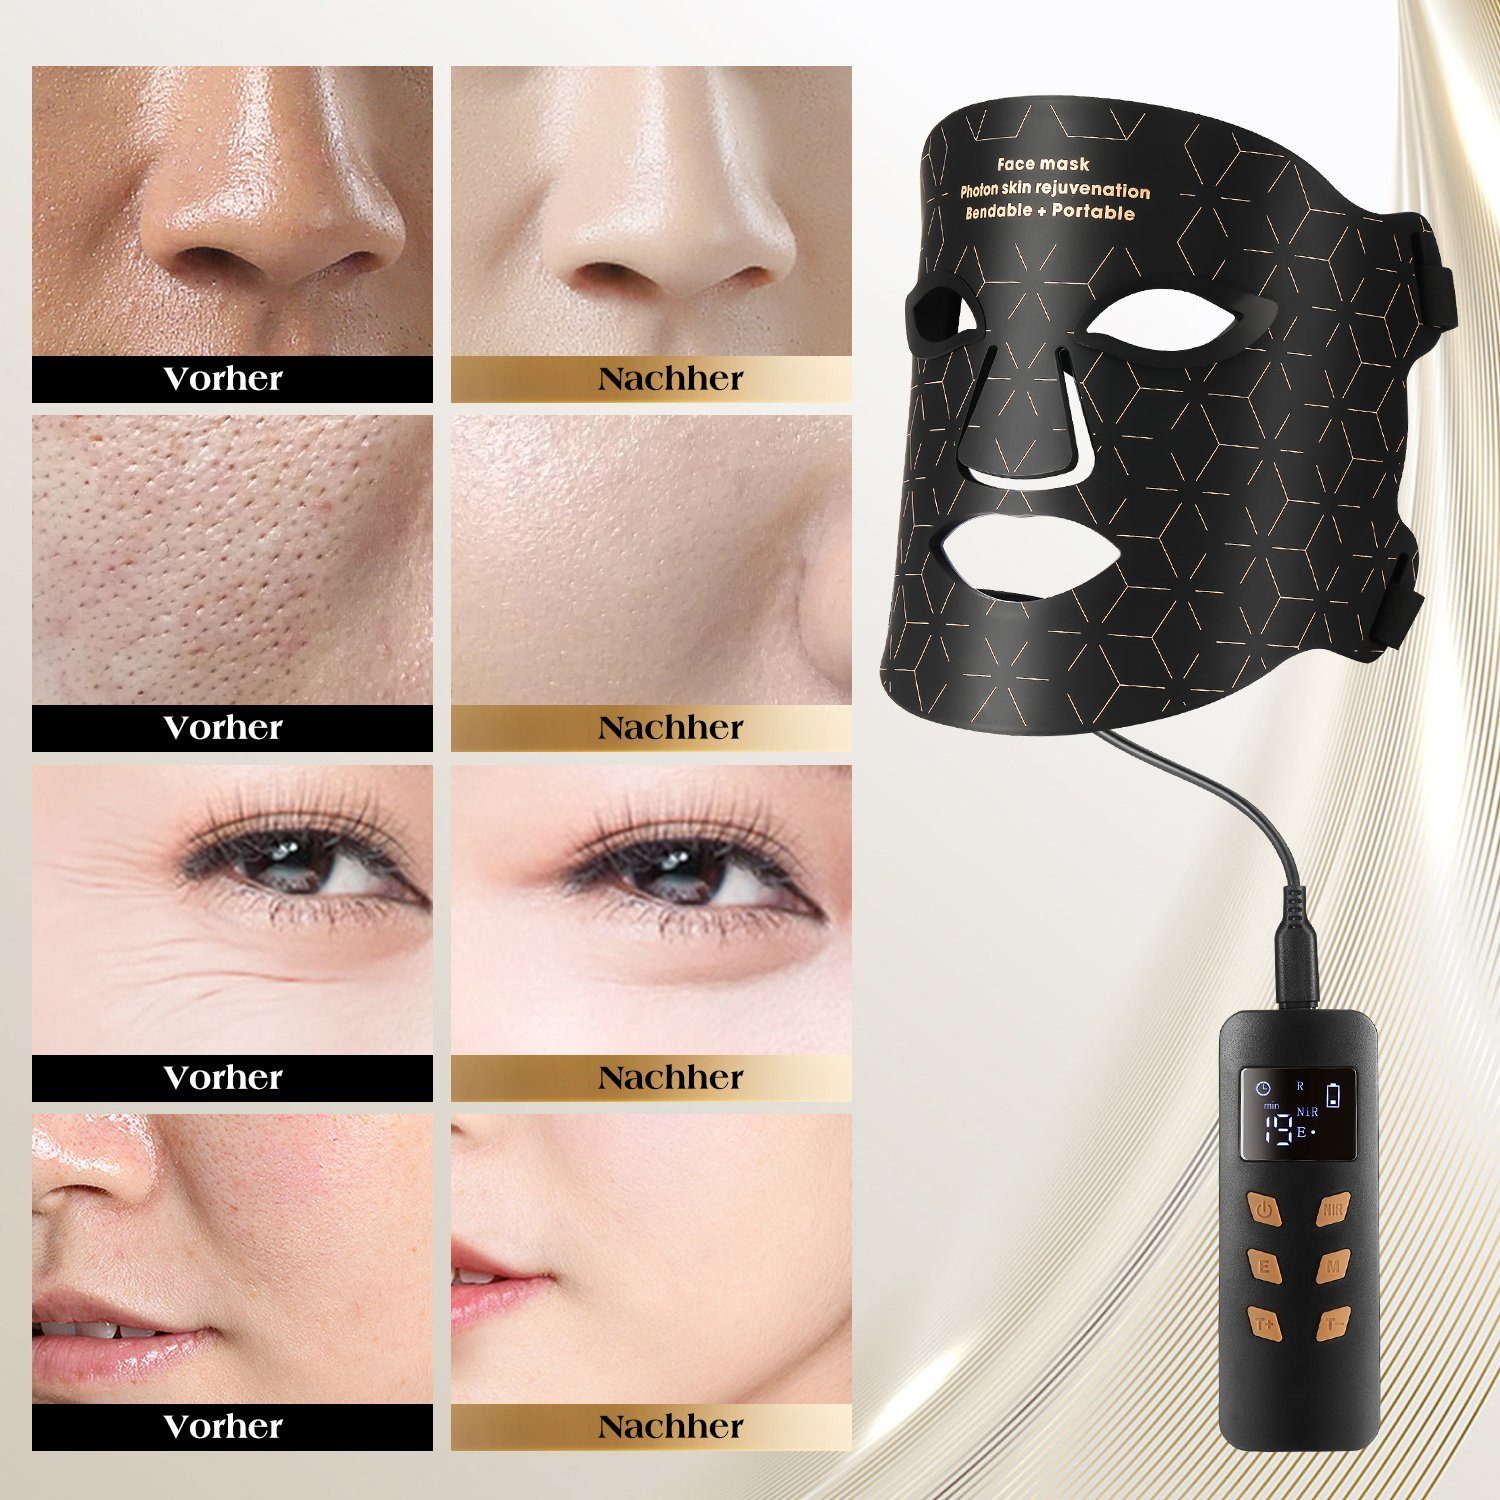 Akne oyajia Gesicht LED Falten 4 Hautverjüngung Gesichtsmasken Kosmetikbehandlungsgerät Anti Anti Lichttherapie,Photonen-Hautverjüngung für Anti-Aging Farben maske,